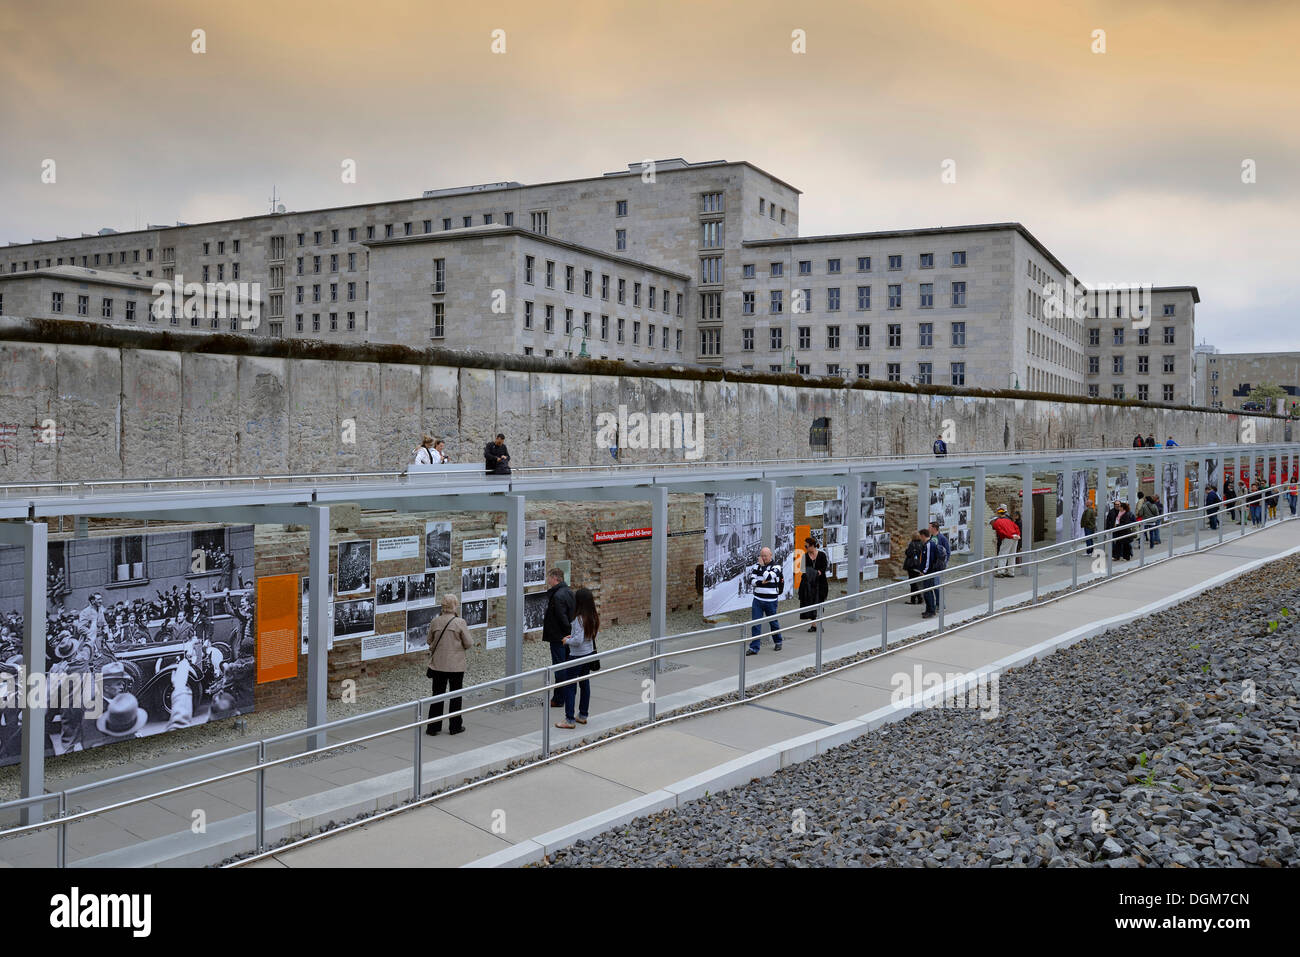 Ehemaligen Gelände der Gestapo, SS und dem Reichssicherheitshauptamt Ausstellung "Topographie des Terrors", Reste der Mauer Stockfoto